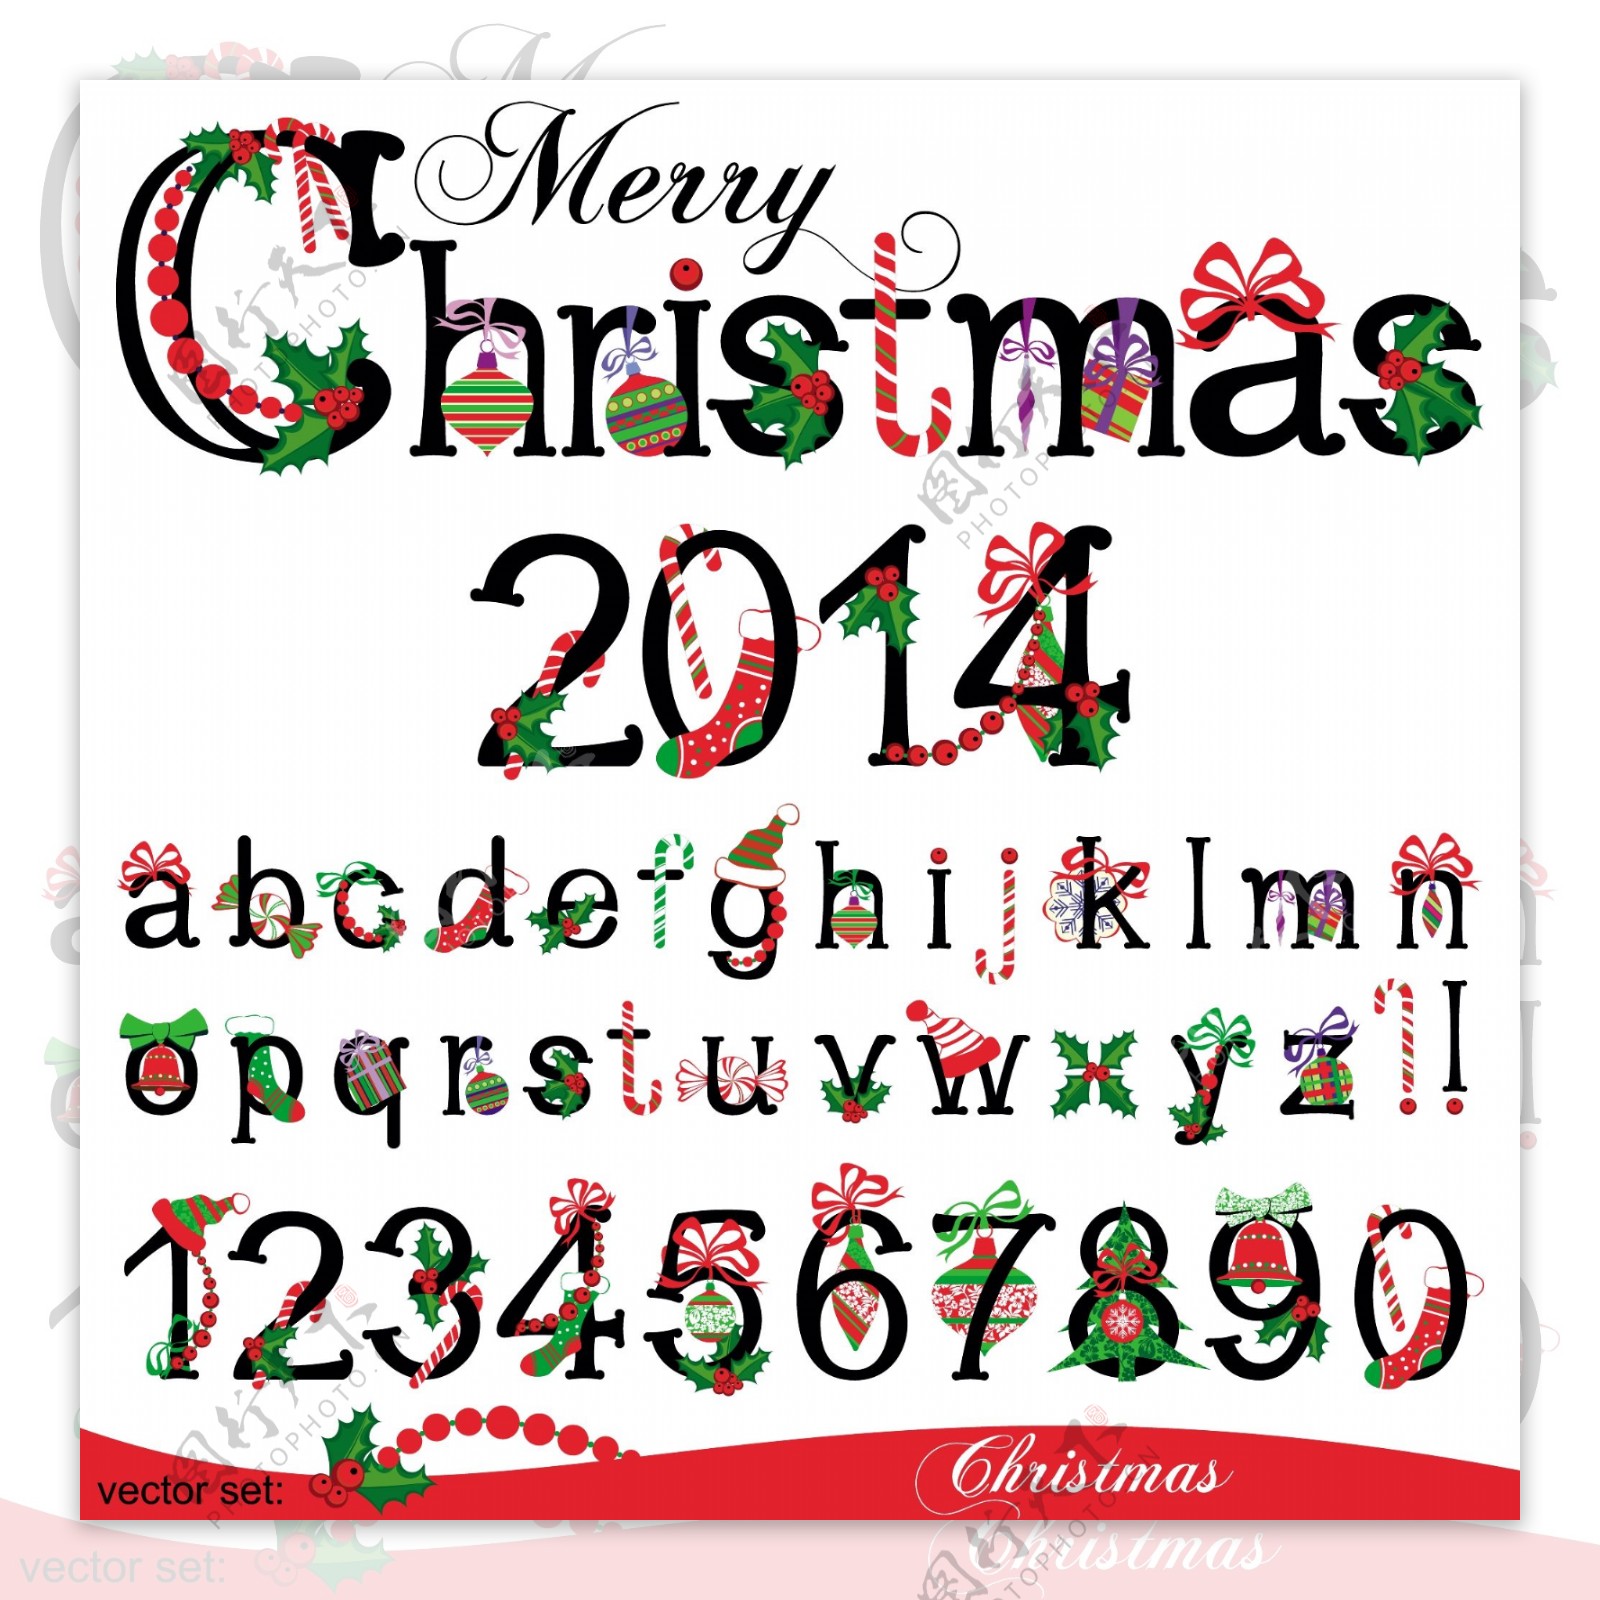 2014年圣诞节图标素材图片